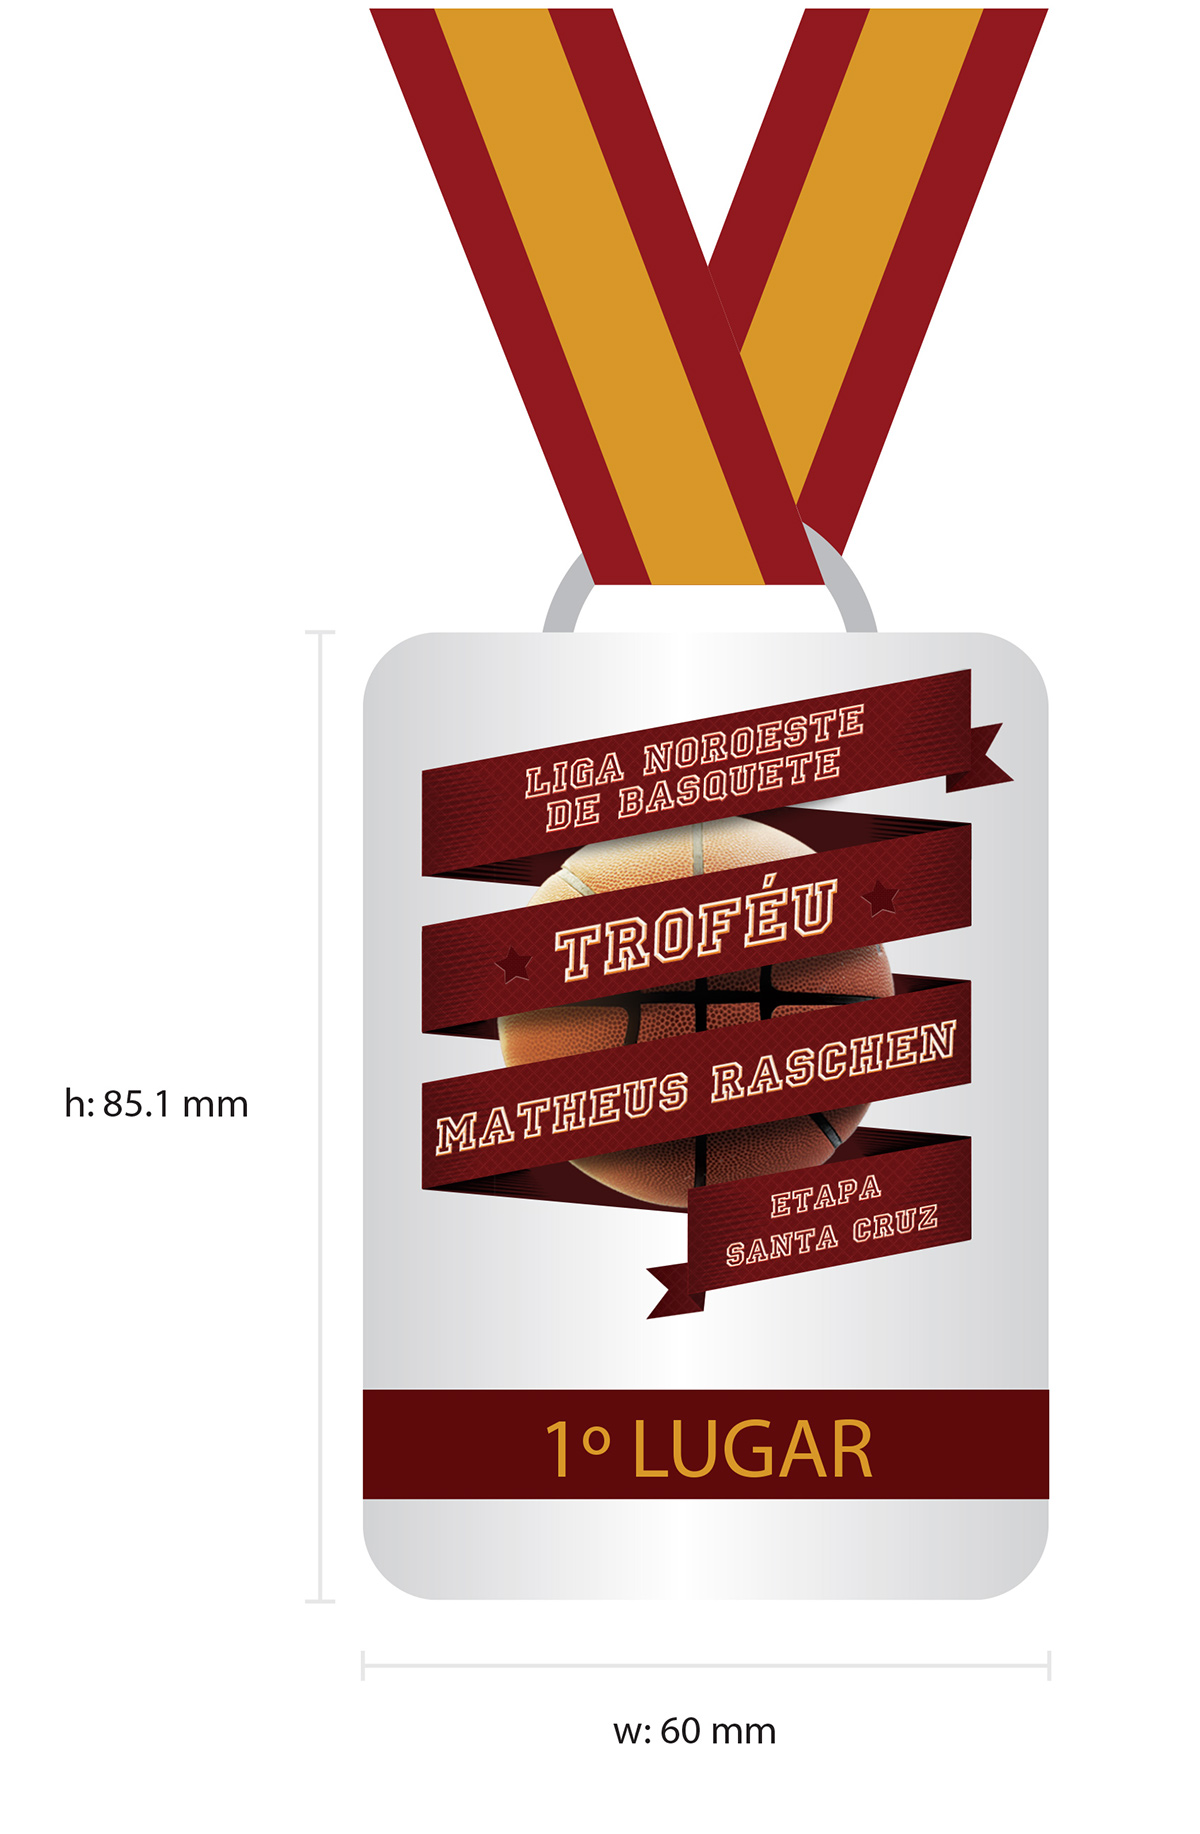 graphicdesign newspaper ad basket flyer cartaz mobile trophy Medal Medalha manipulation